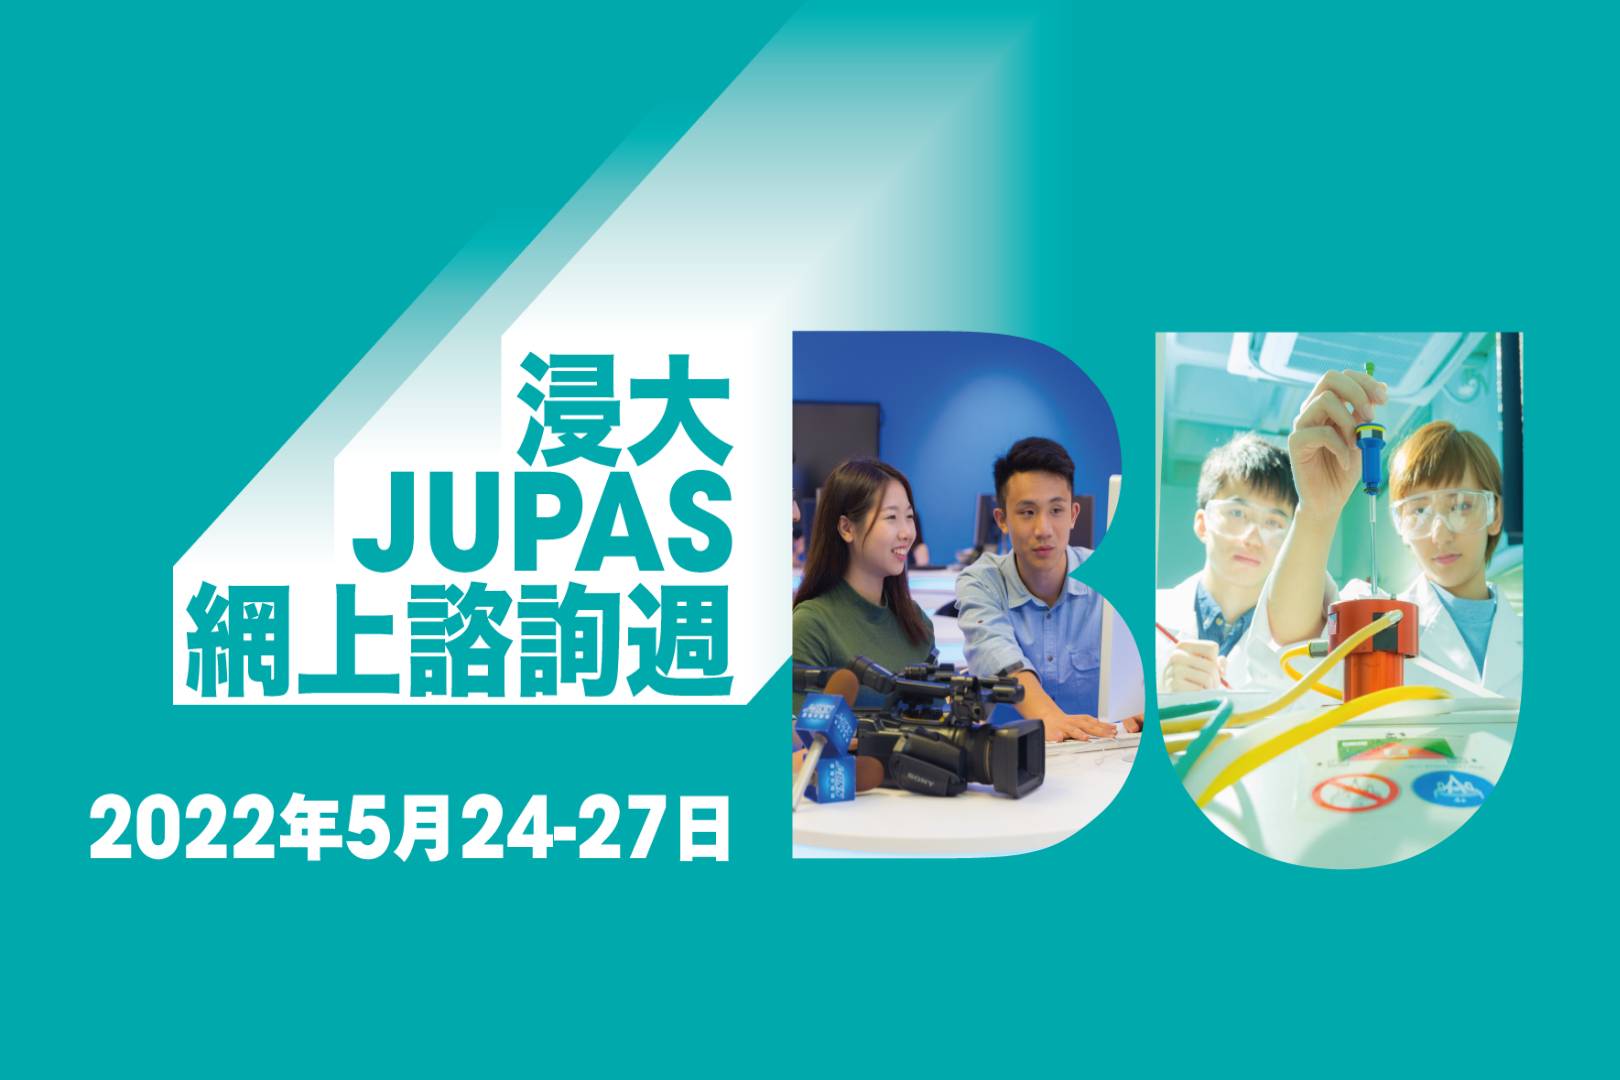 浸大將於5月24至27日舉辦2022年「JUPAS網上諮詢週」。